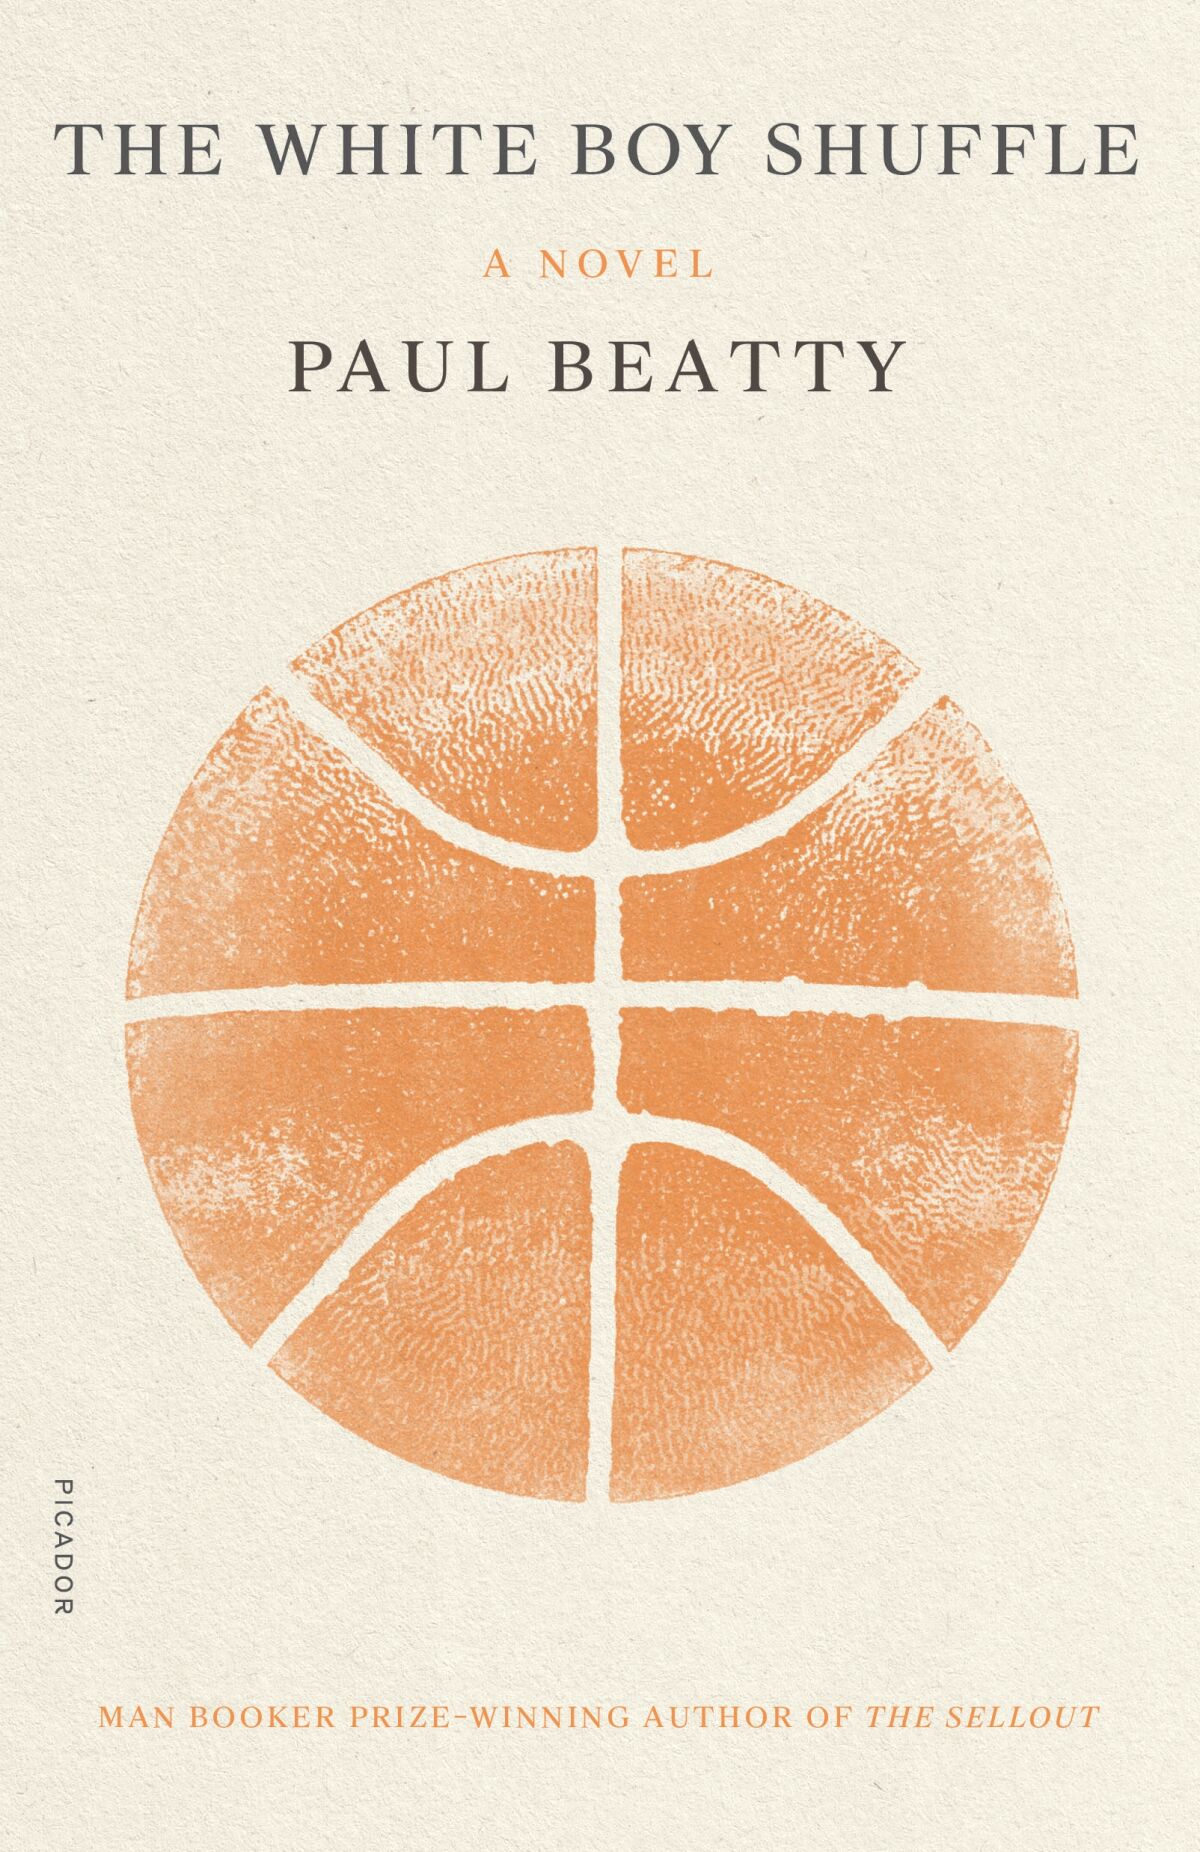 WHITE BOY SHUFFLE, Paul Beatty